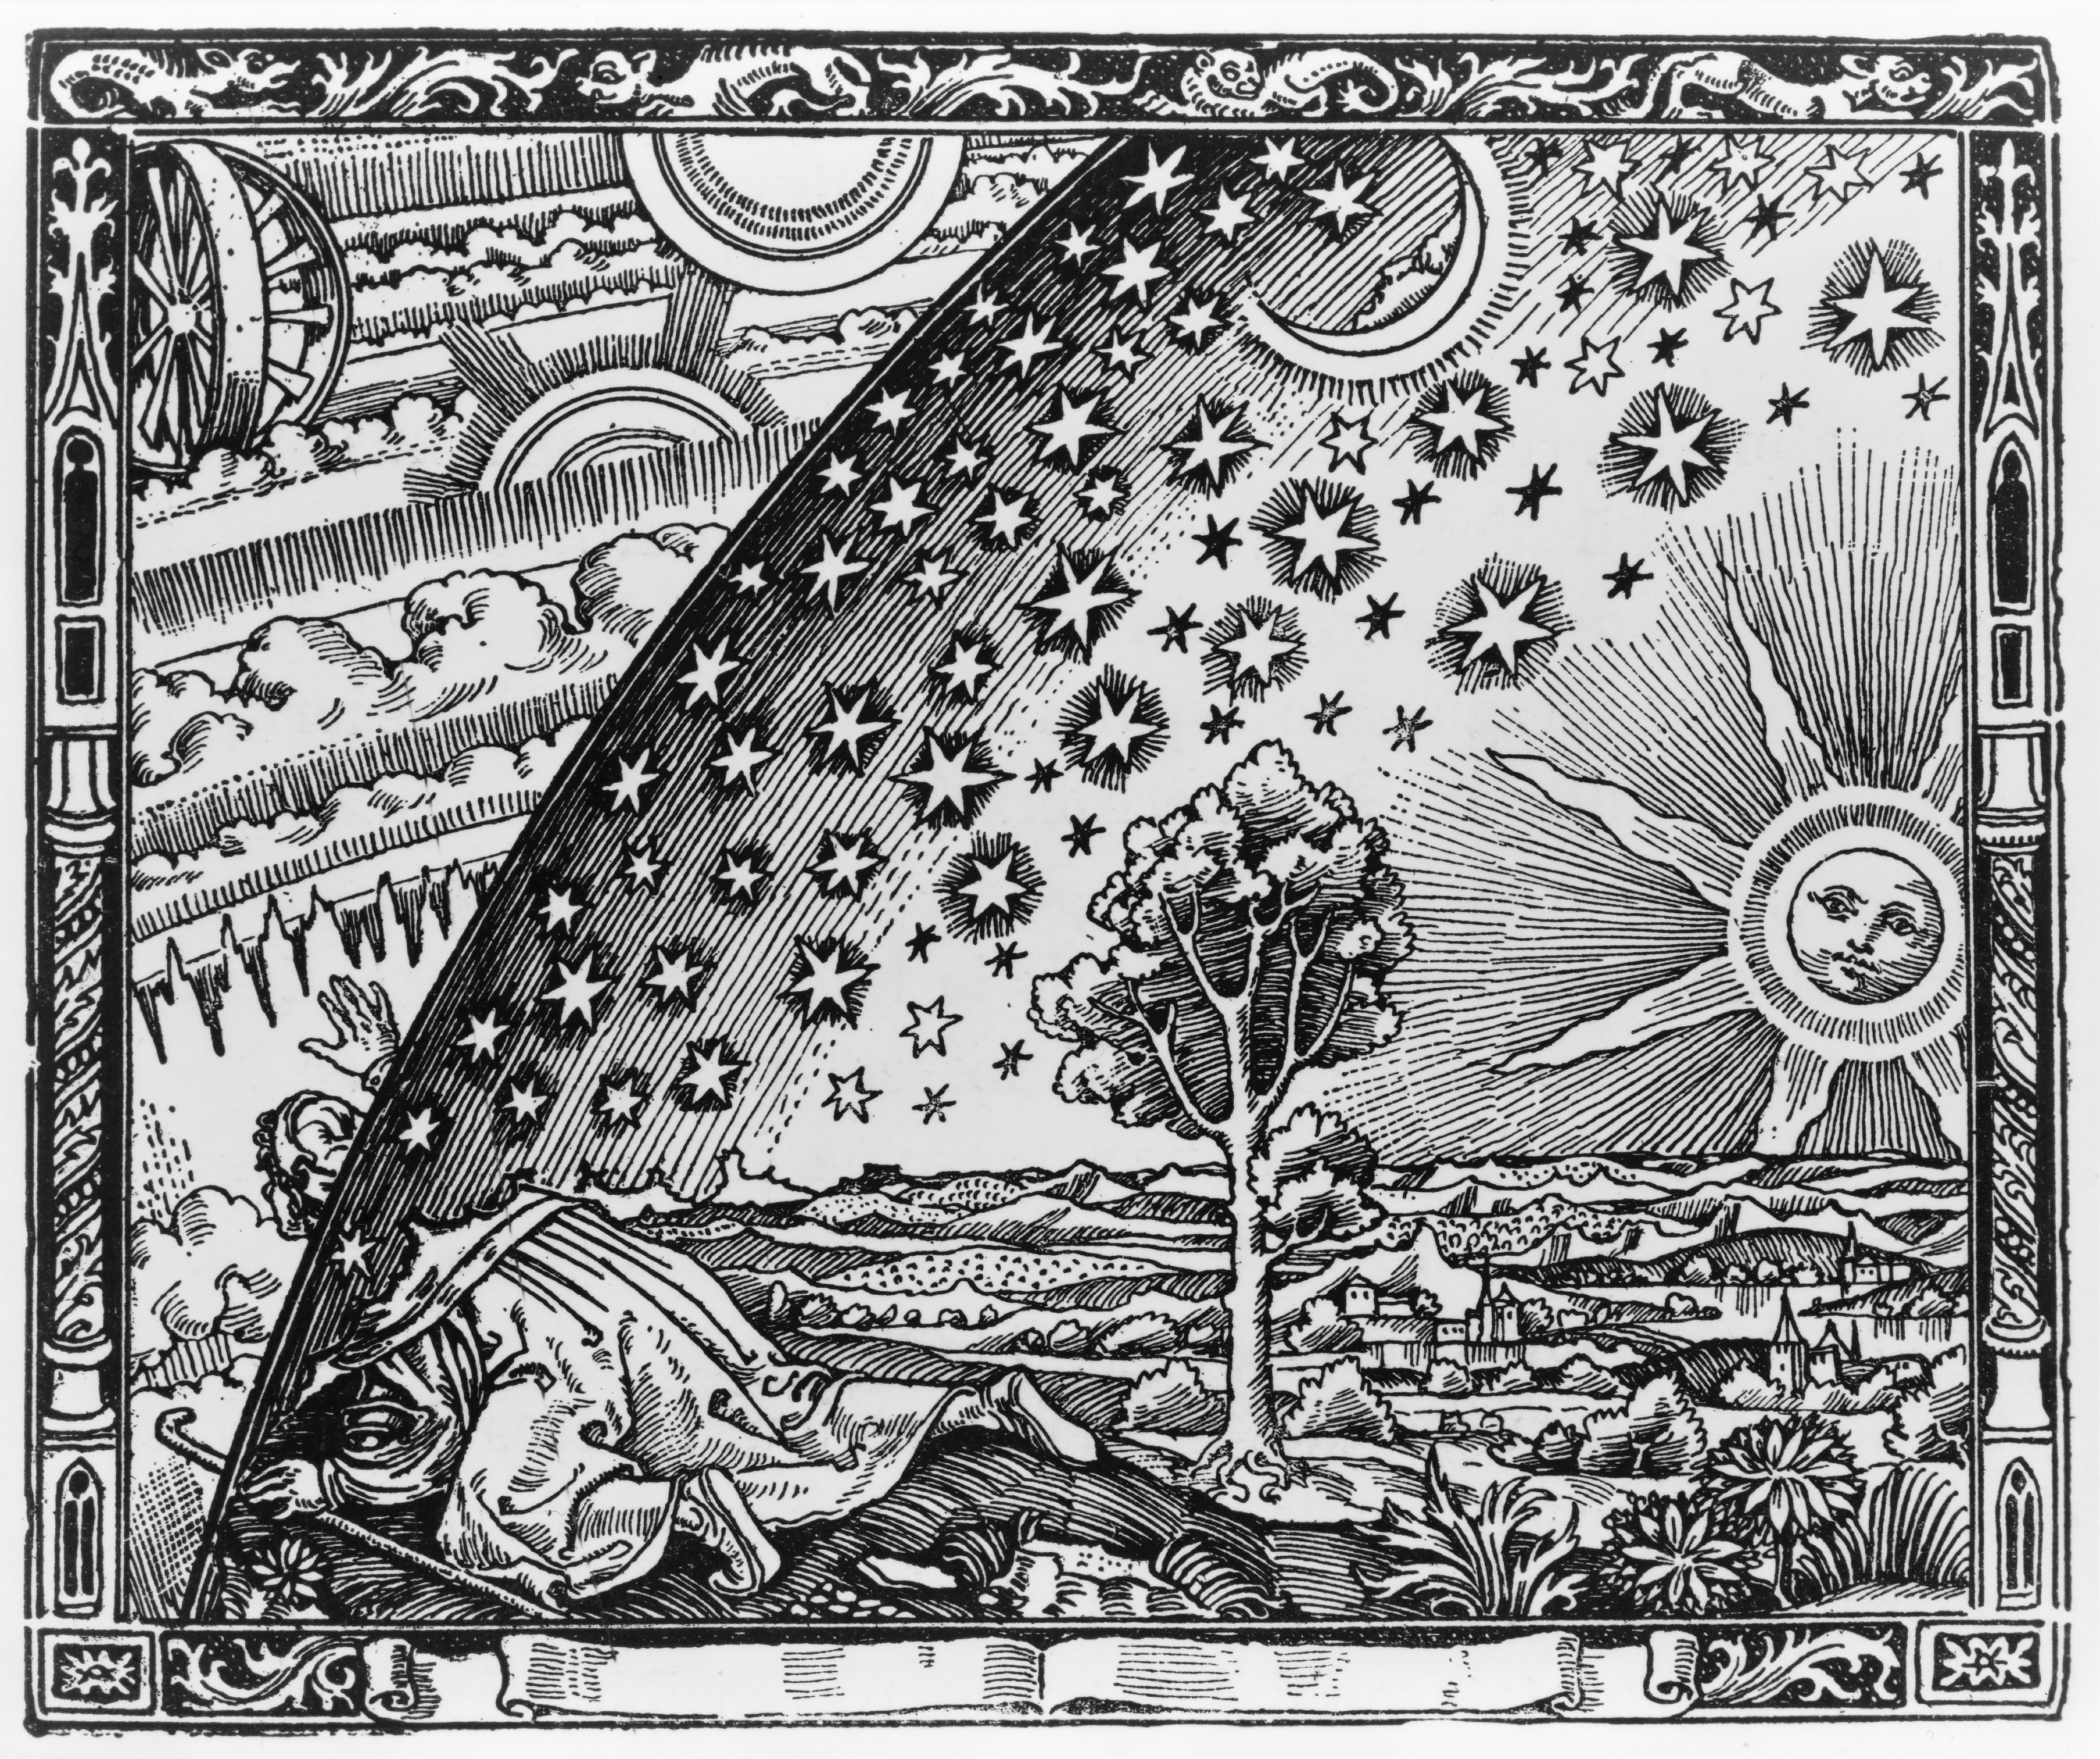 Flammarion Engraving